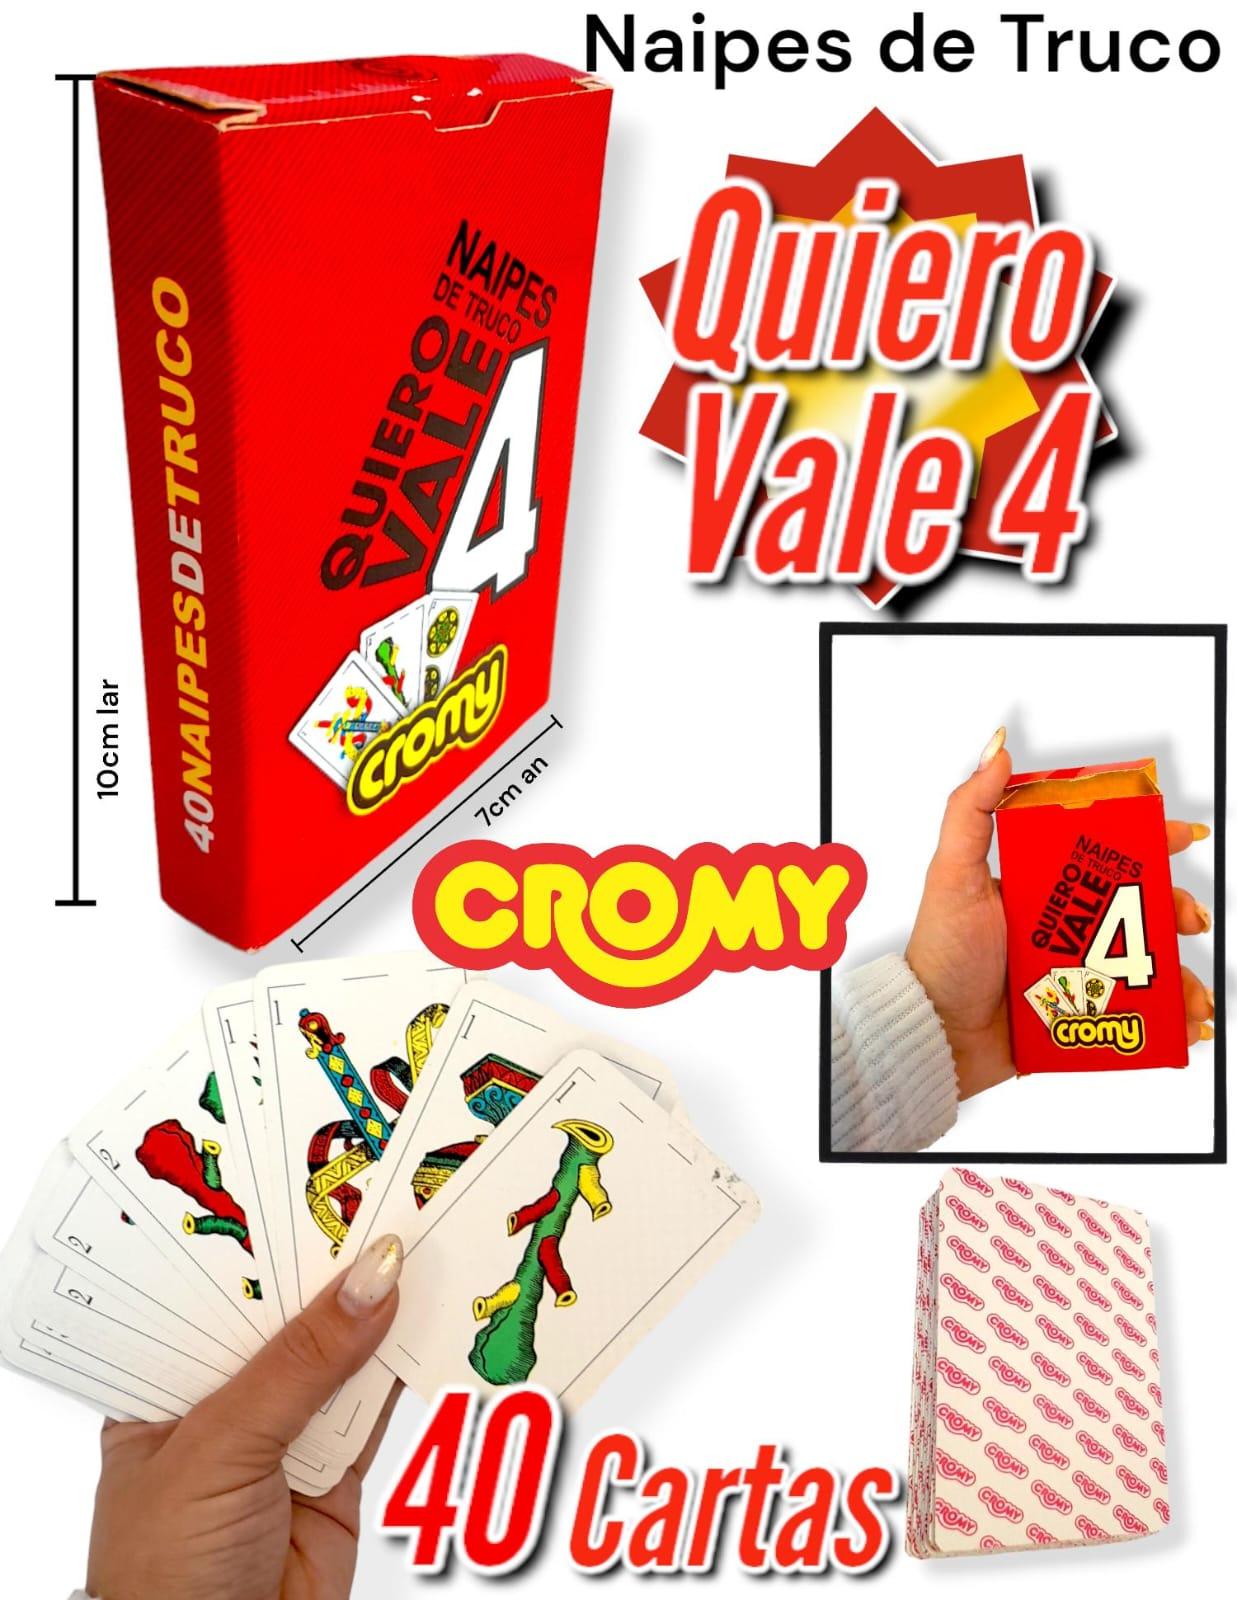 Naipes de Truco QUIERO VALE 4 CROMY 